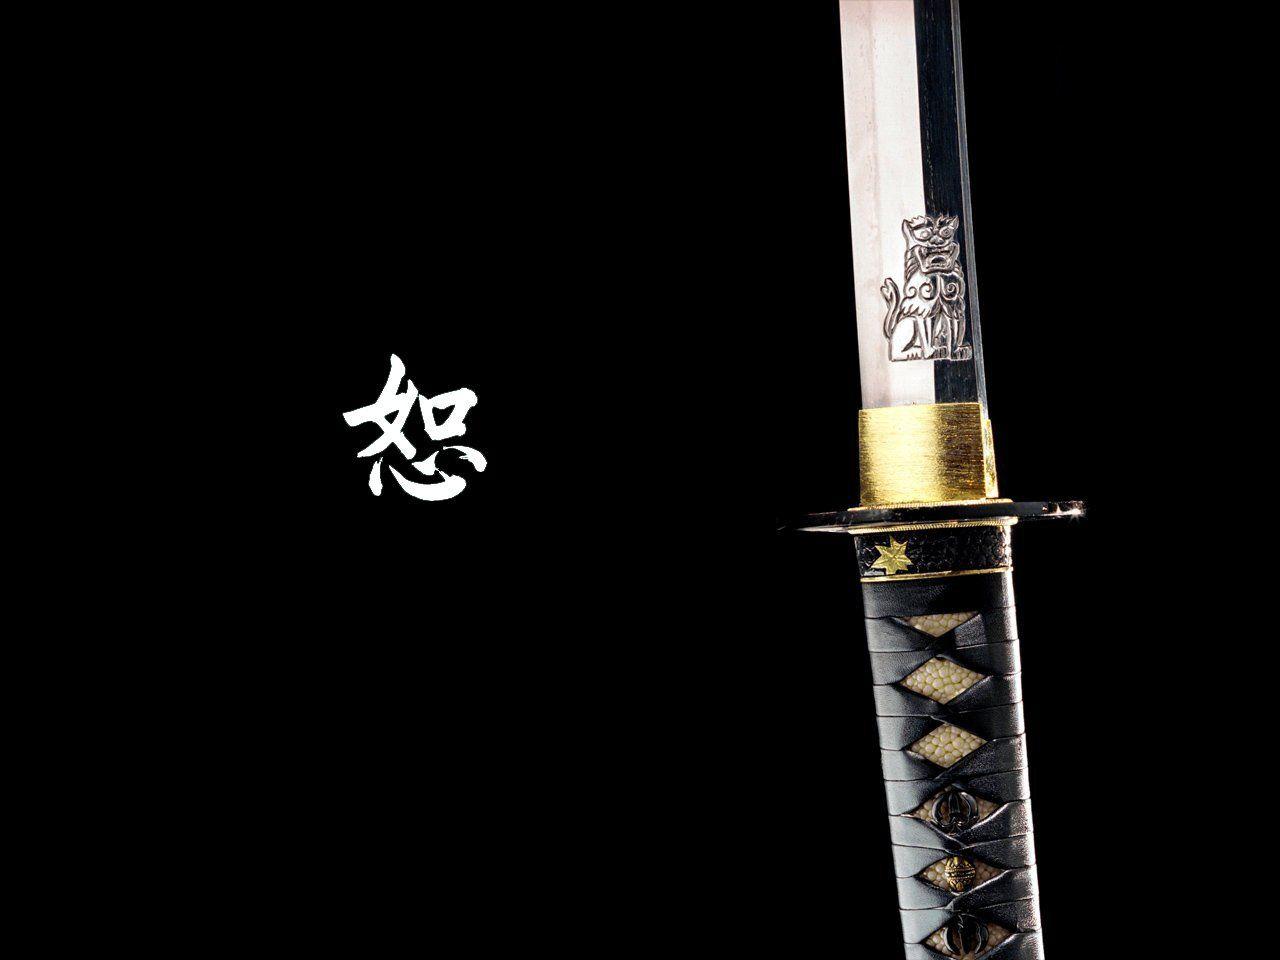 Man Made Katana Wallpaper. Samurai wallpaper, Katana, Samurai swords katana